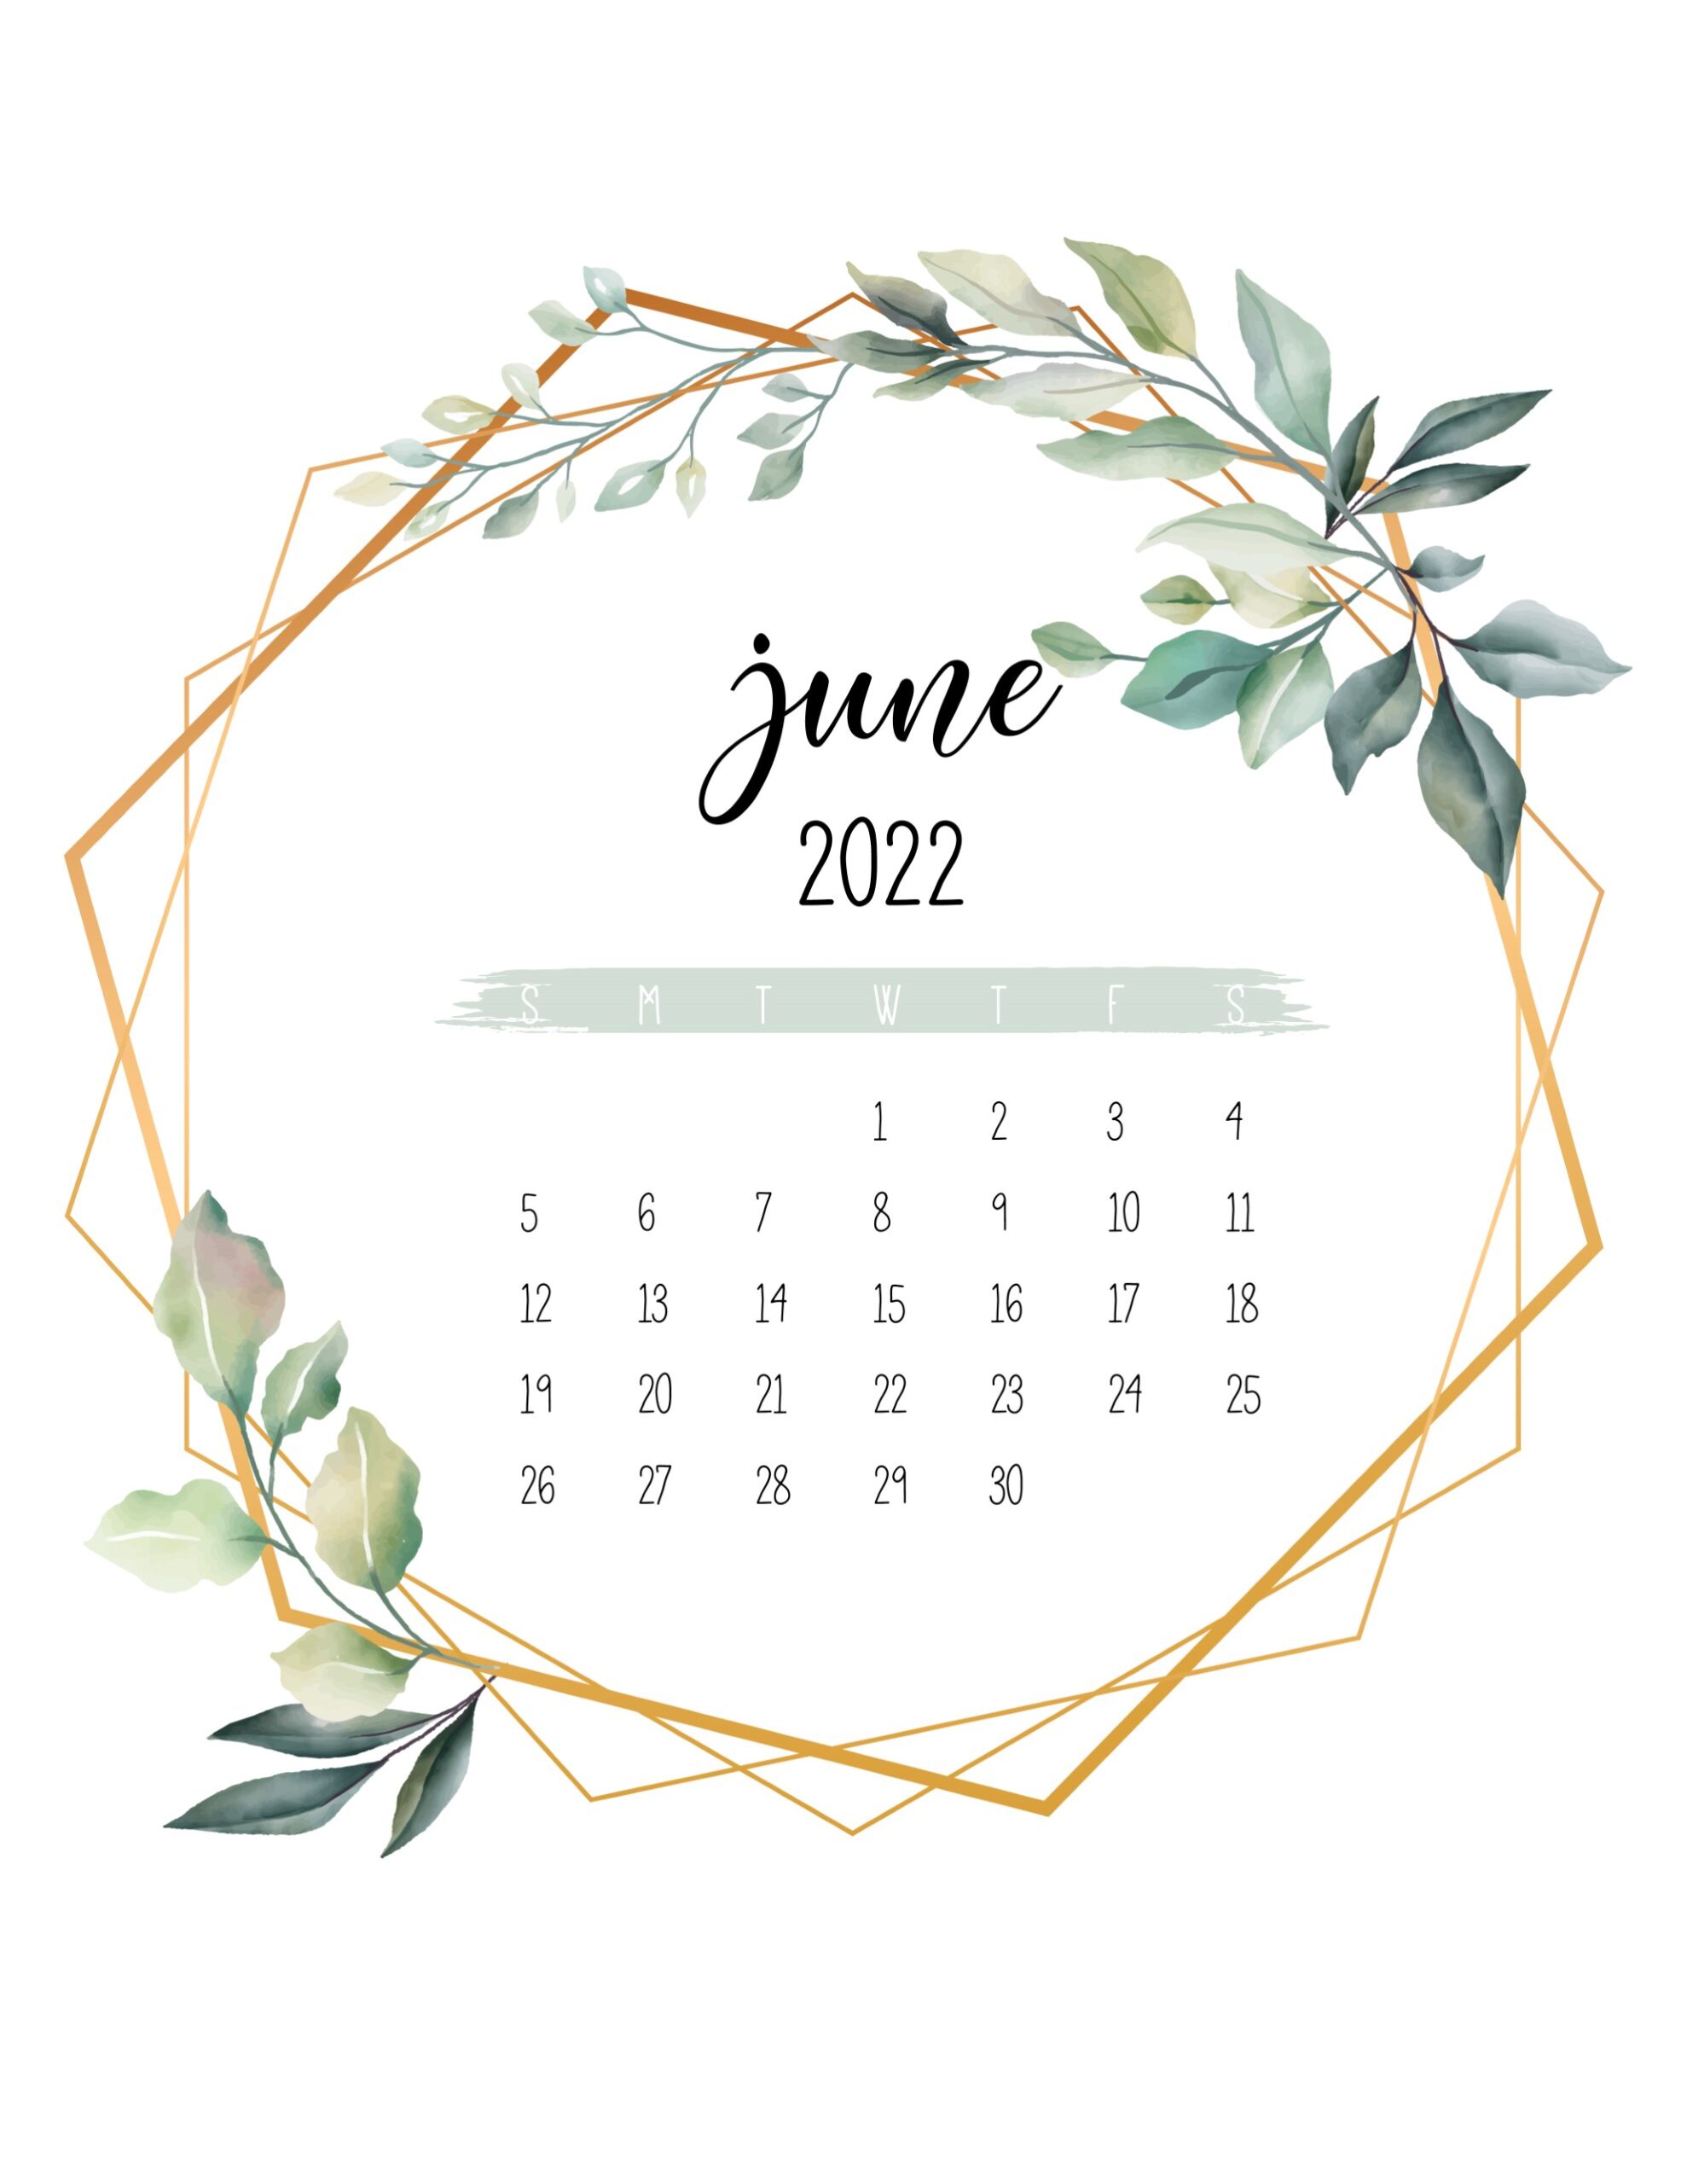 Calendario 2022 jardim botanico junho